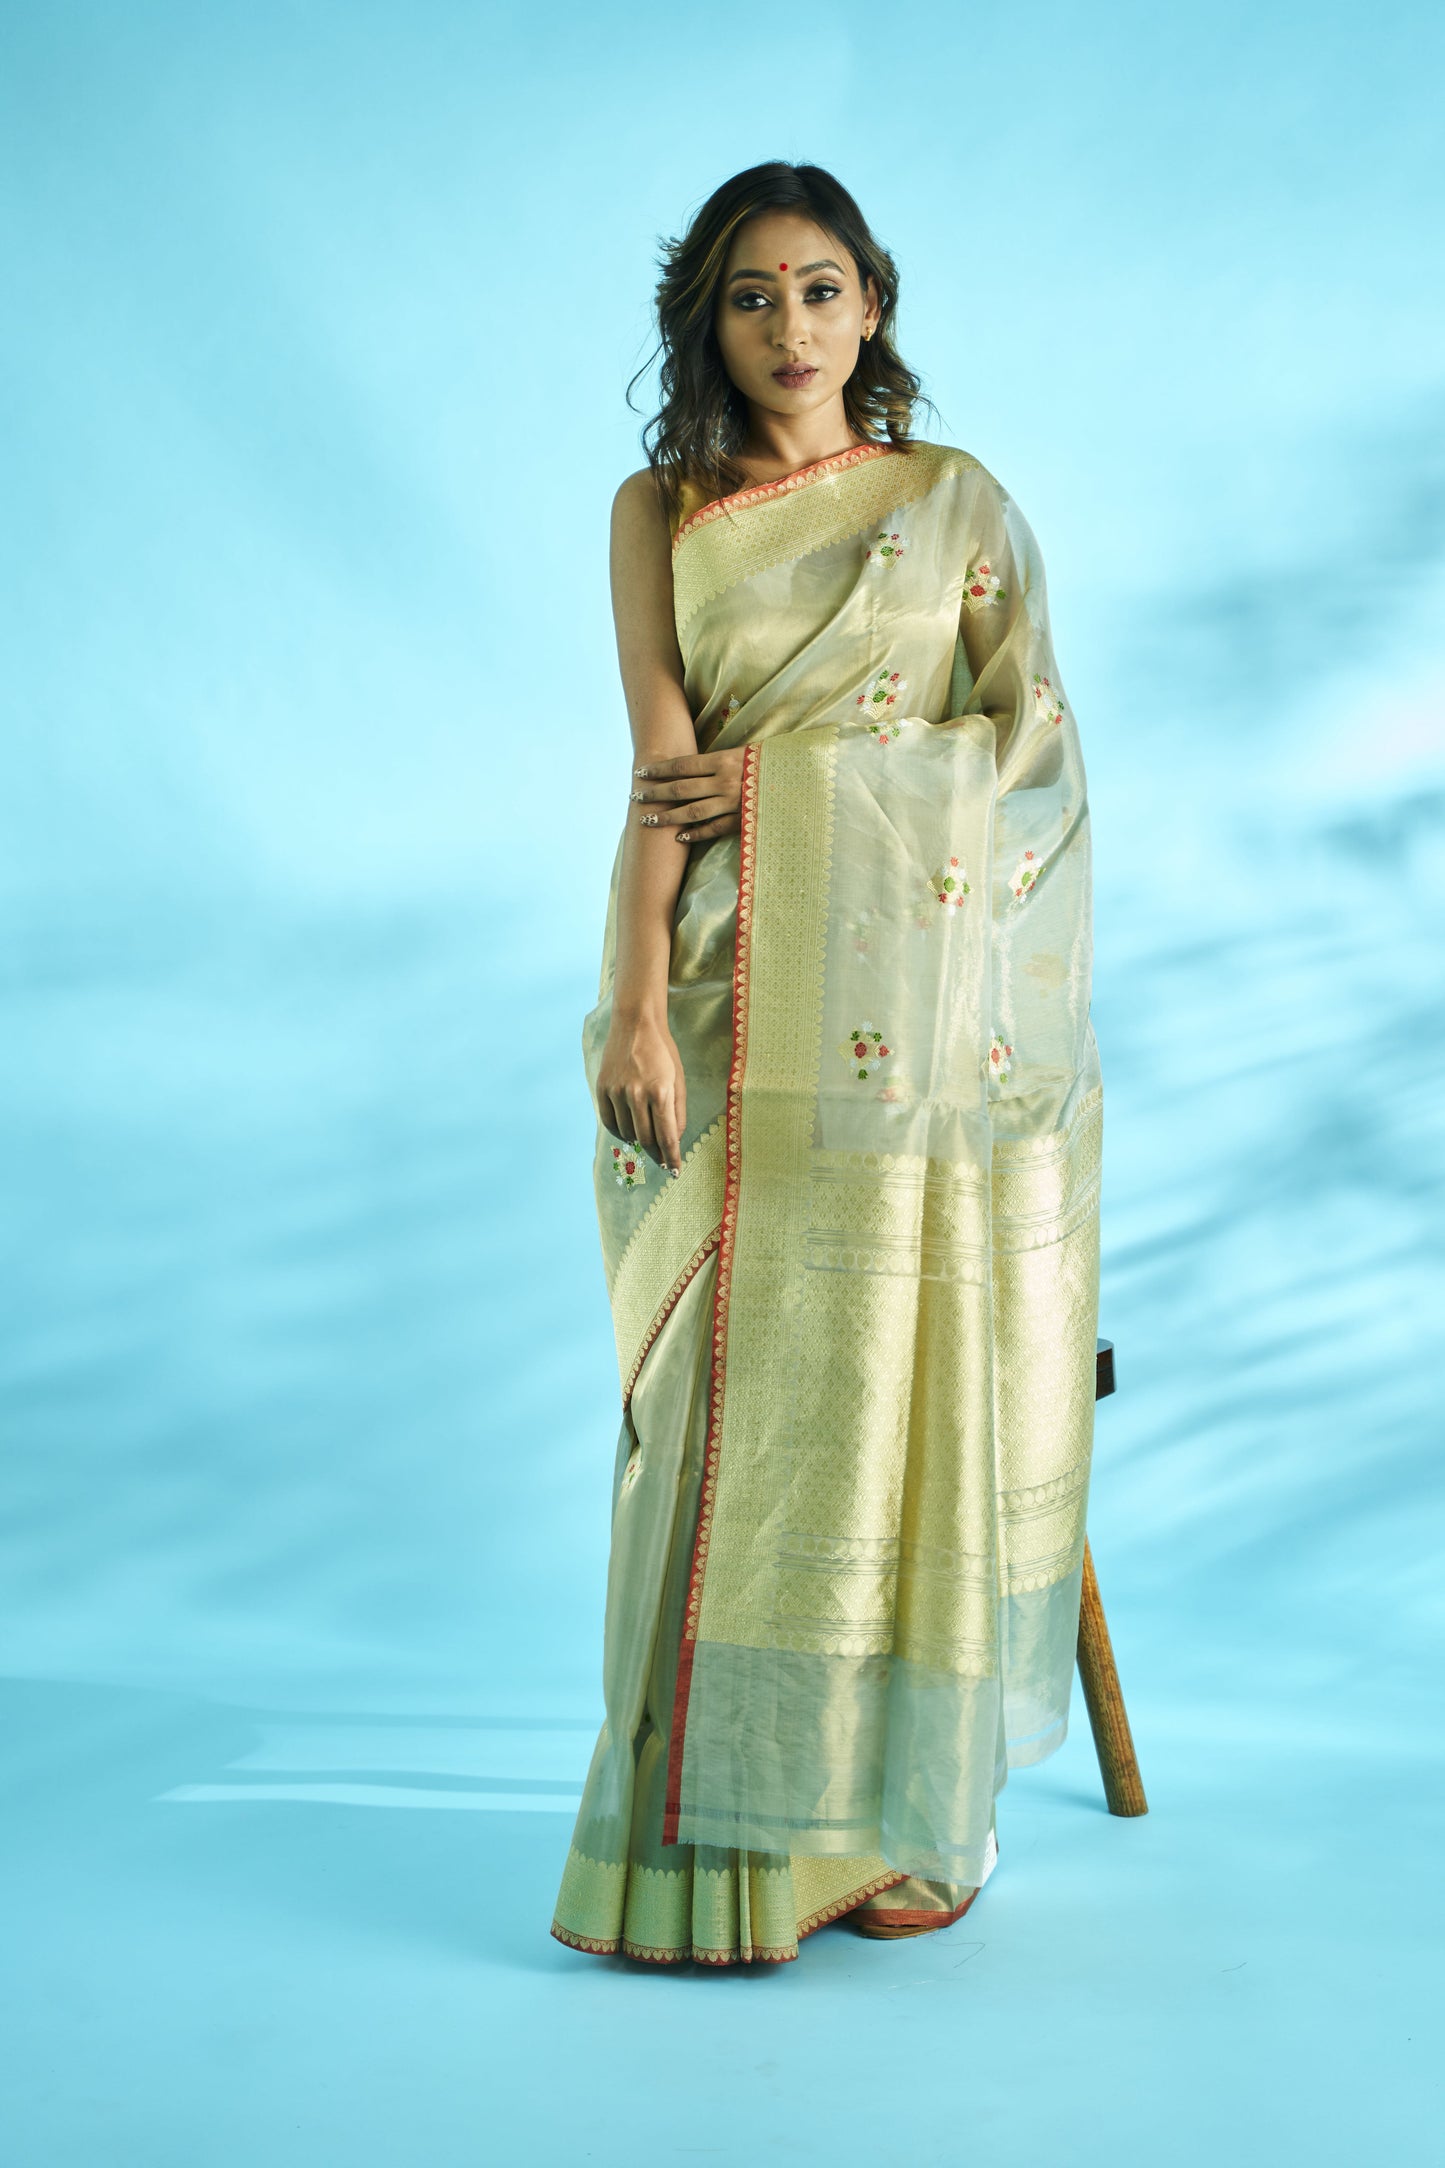 Beautiful handloom handwoven kora tissue banarasi saree with kadhua meenedar buta